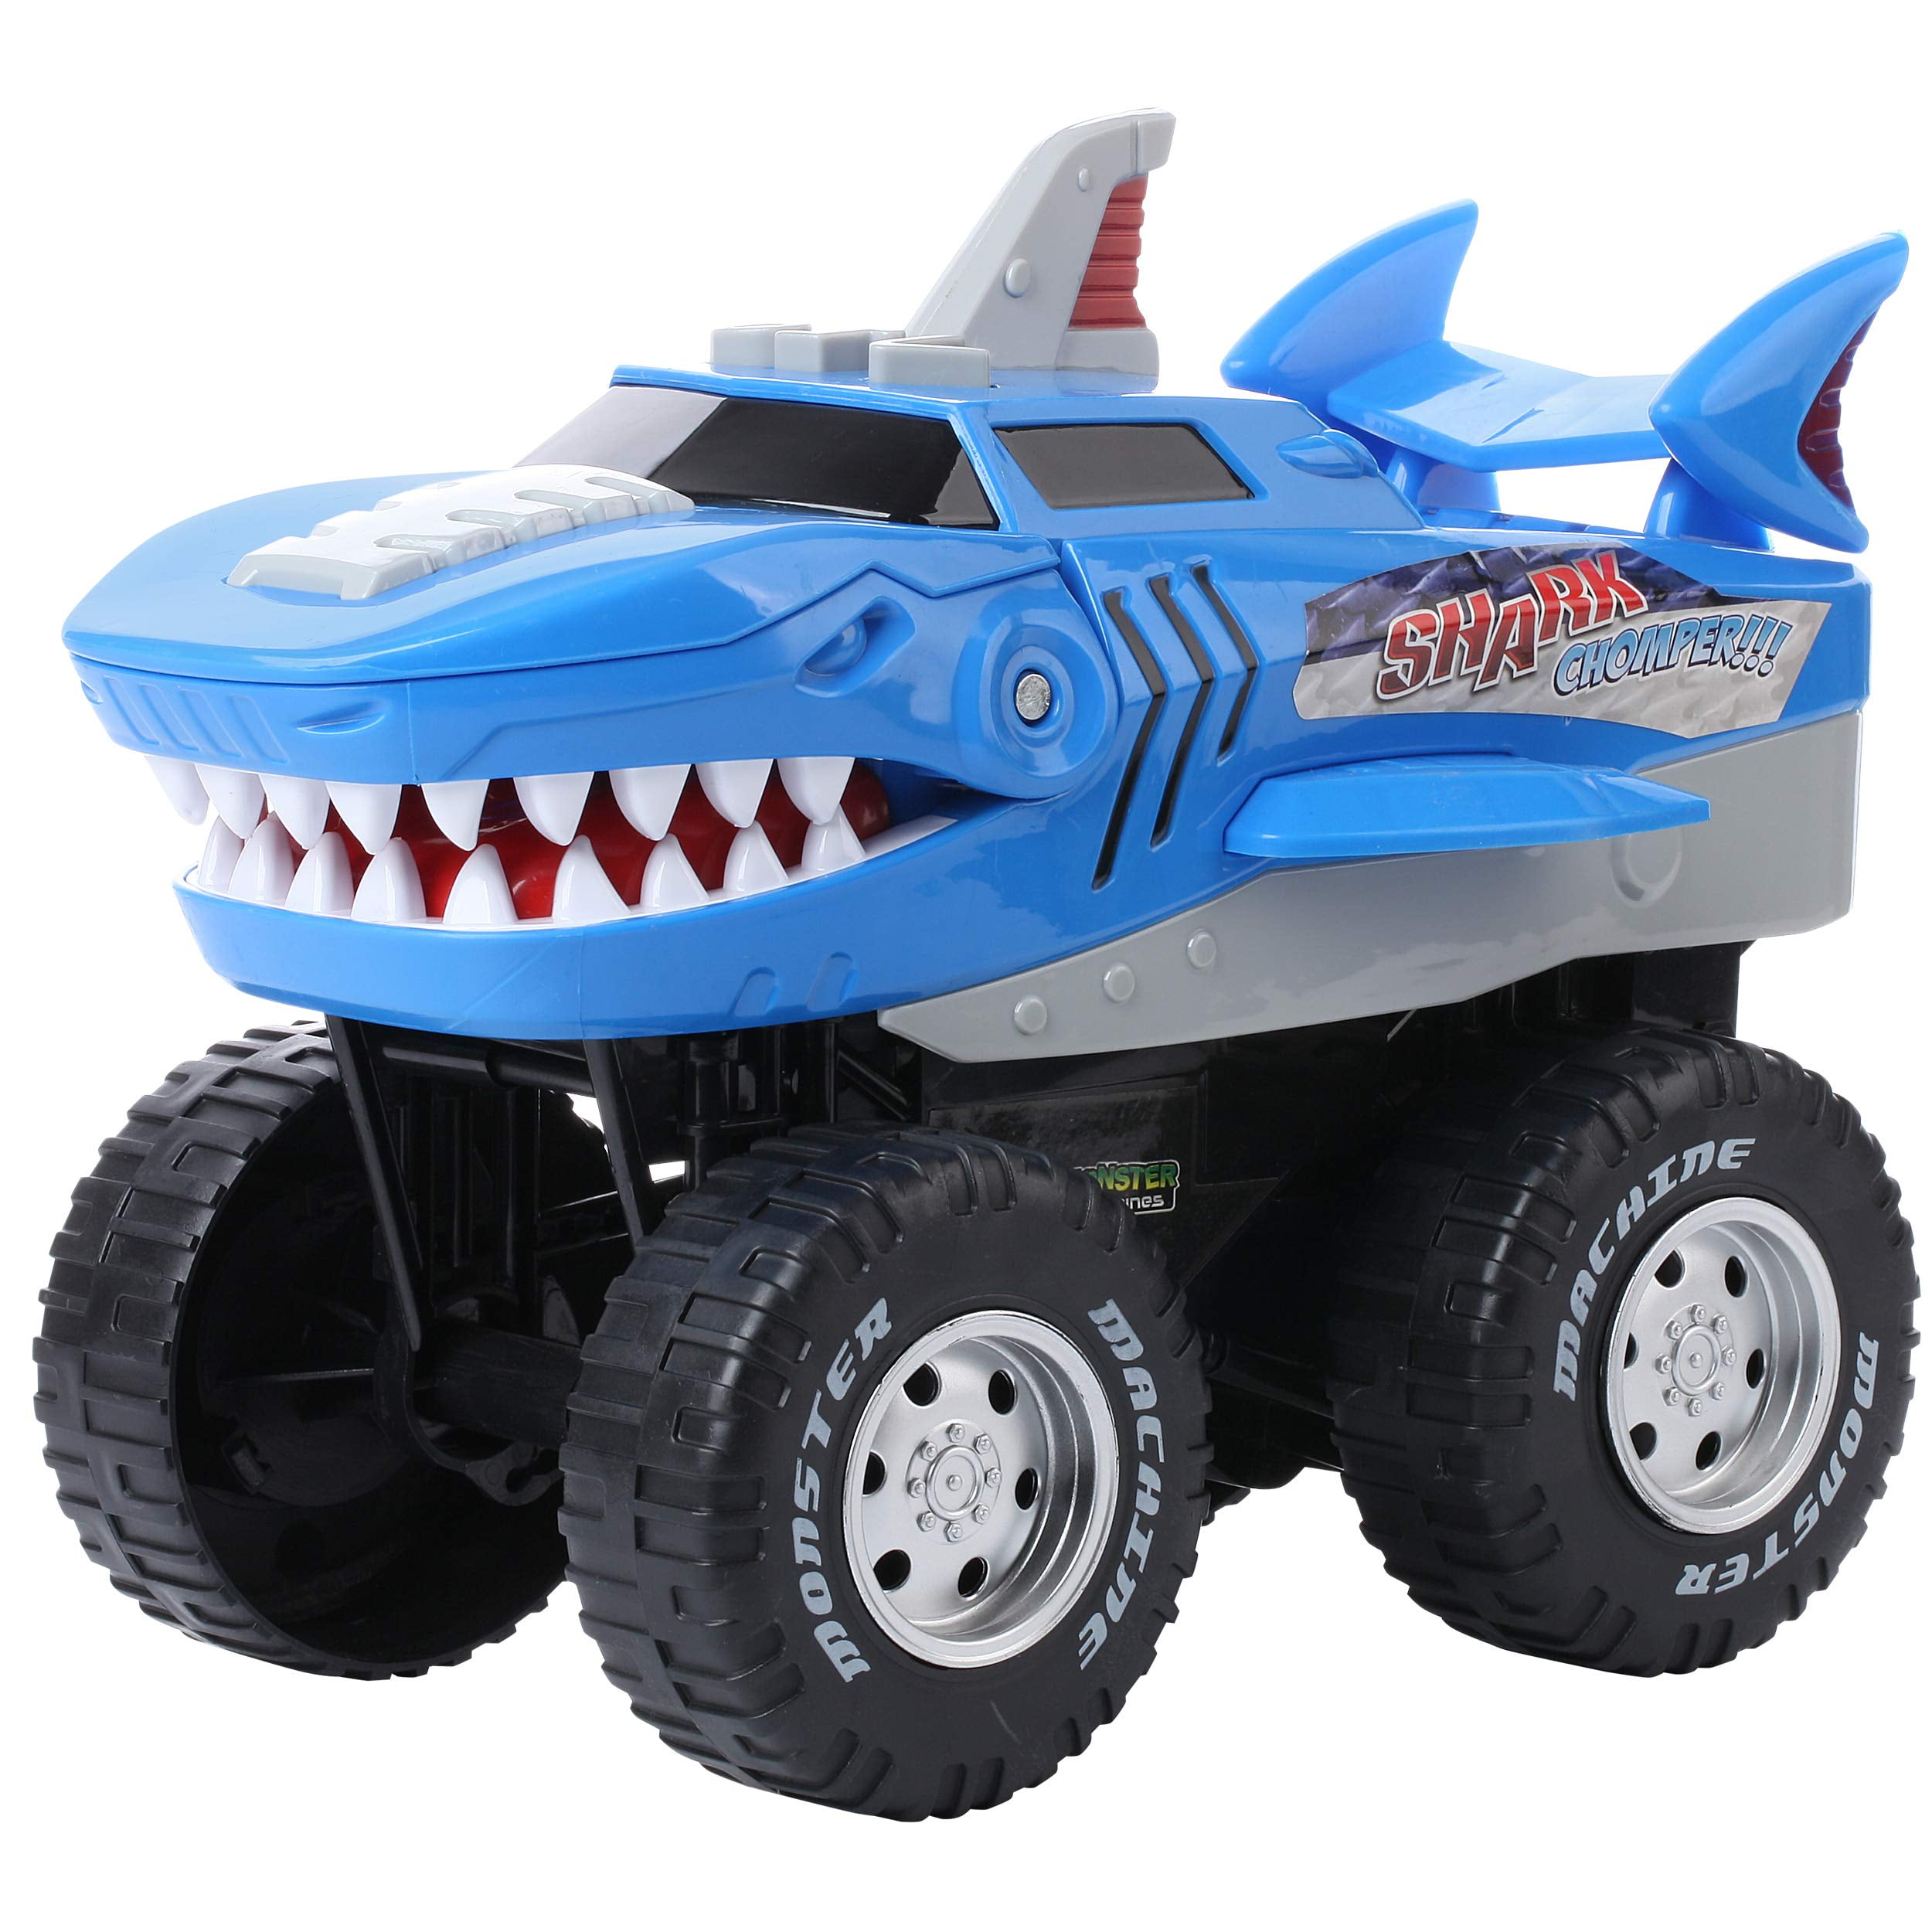 Monster Trucks Take on Fire & Shark Tank Challenges! - Monster